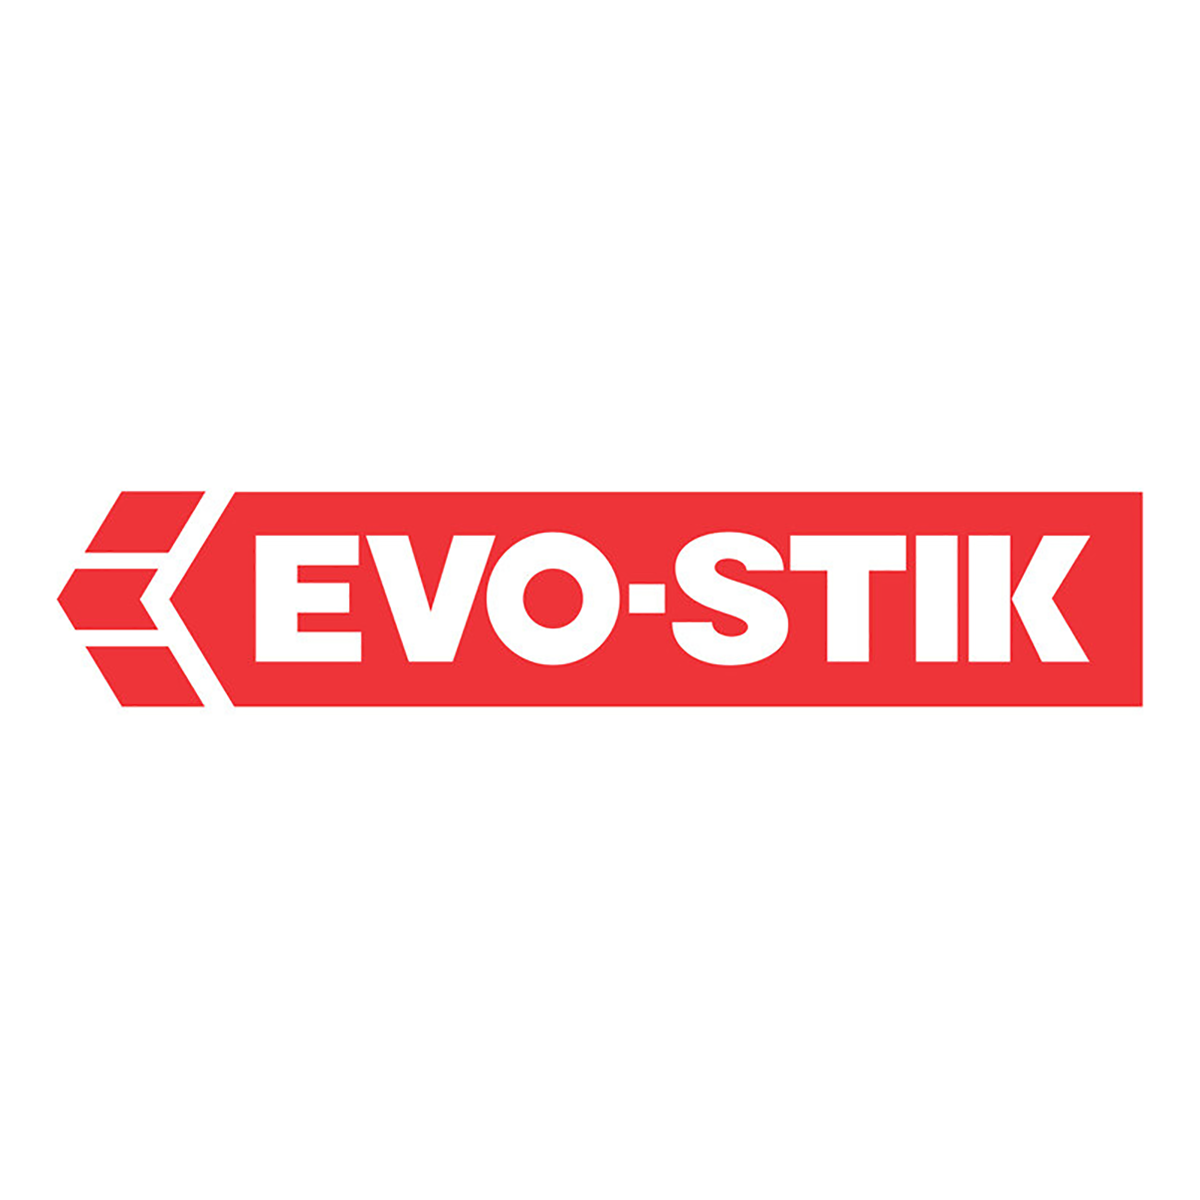 Bostik Evo-stik lim tørrdrakt, 0,33ltr